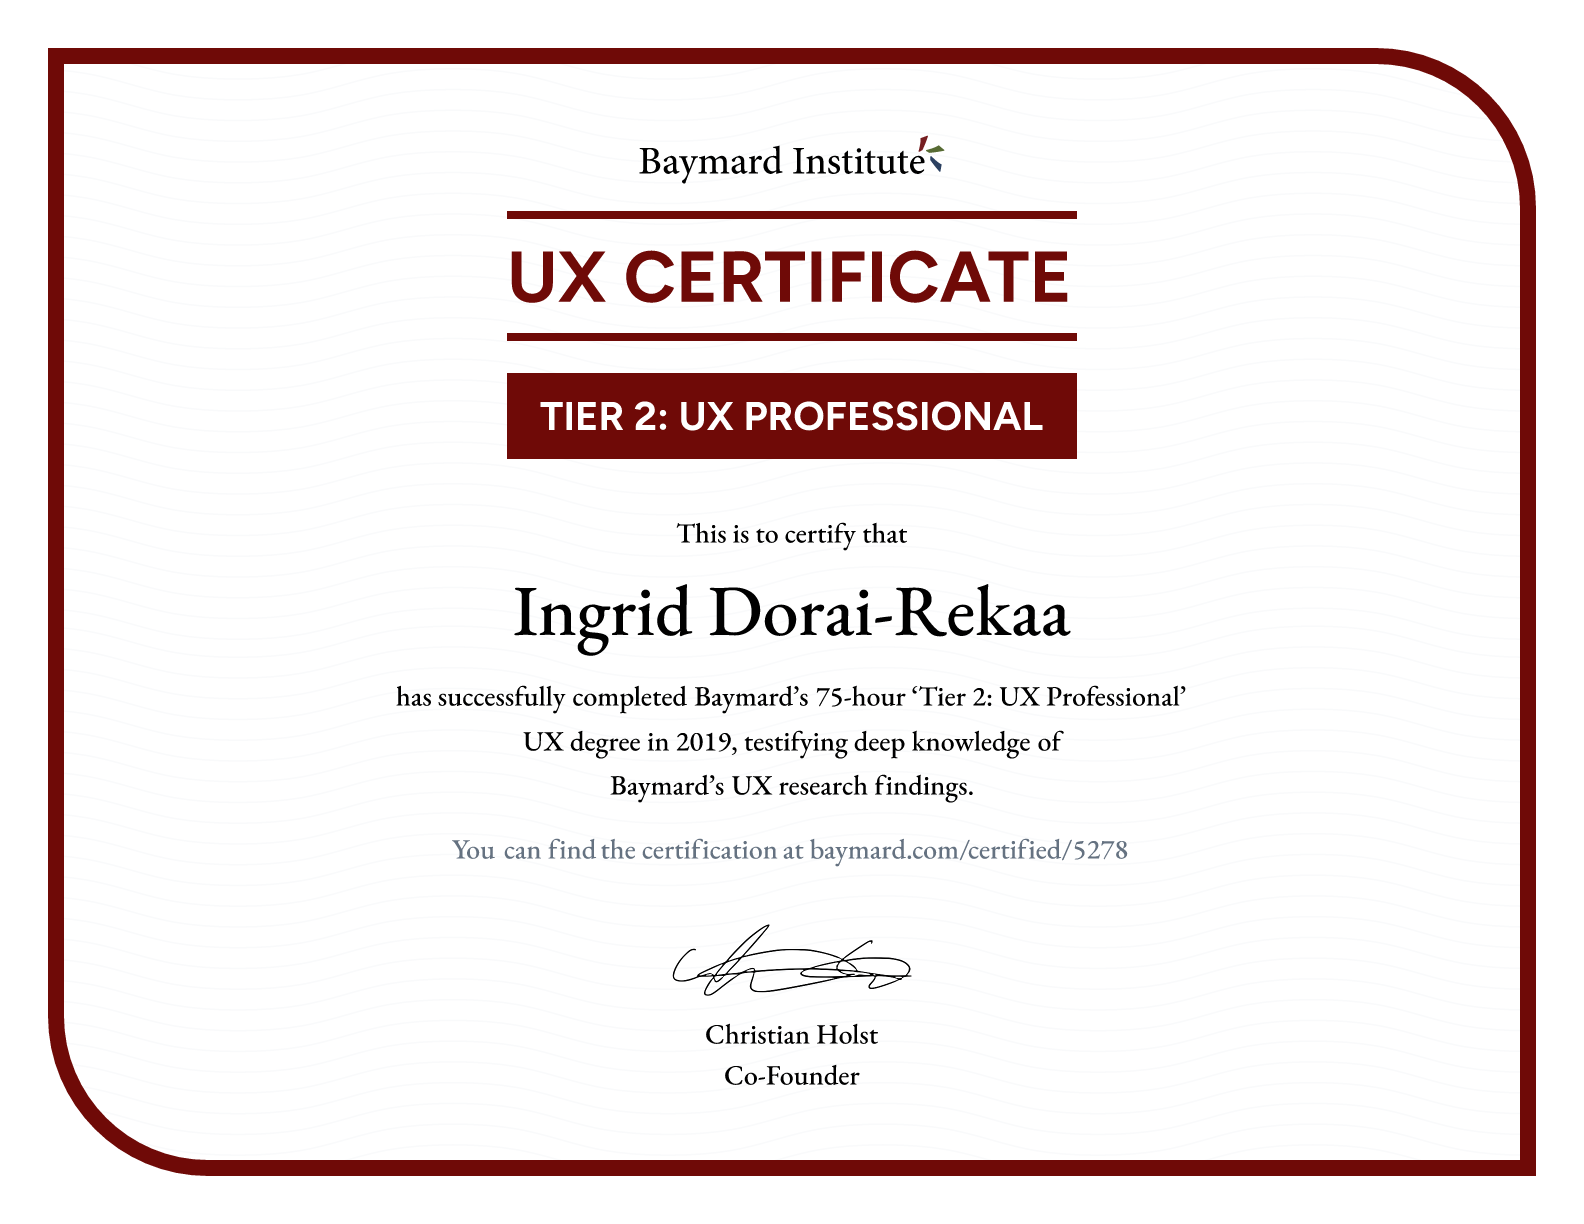 Ingrid Dorai-Rekaa’s certificate